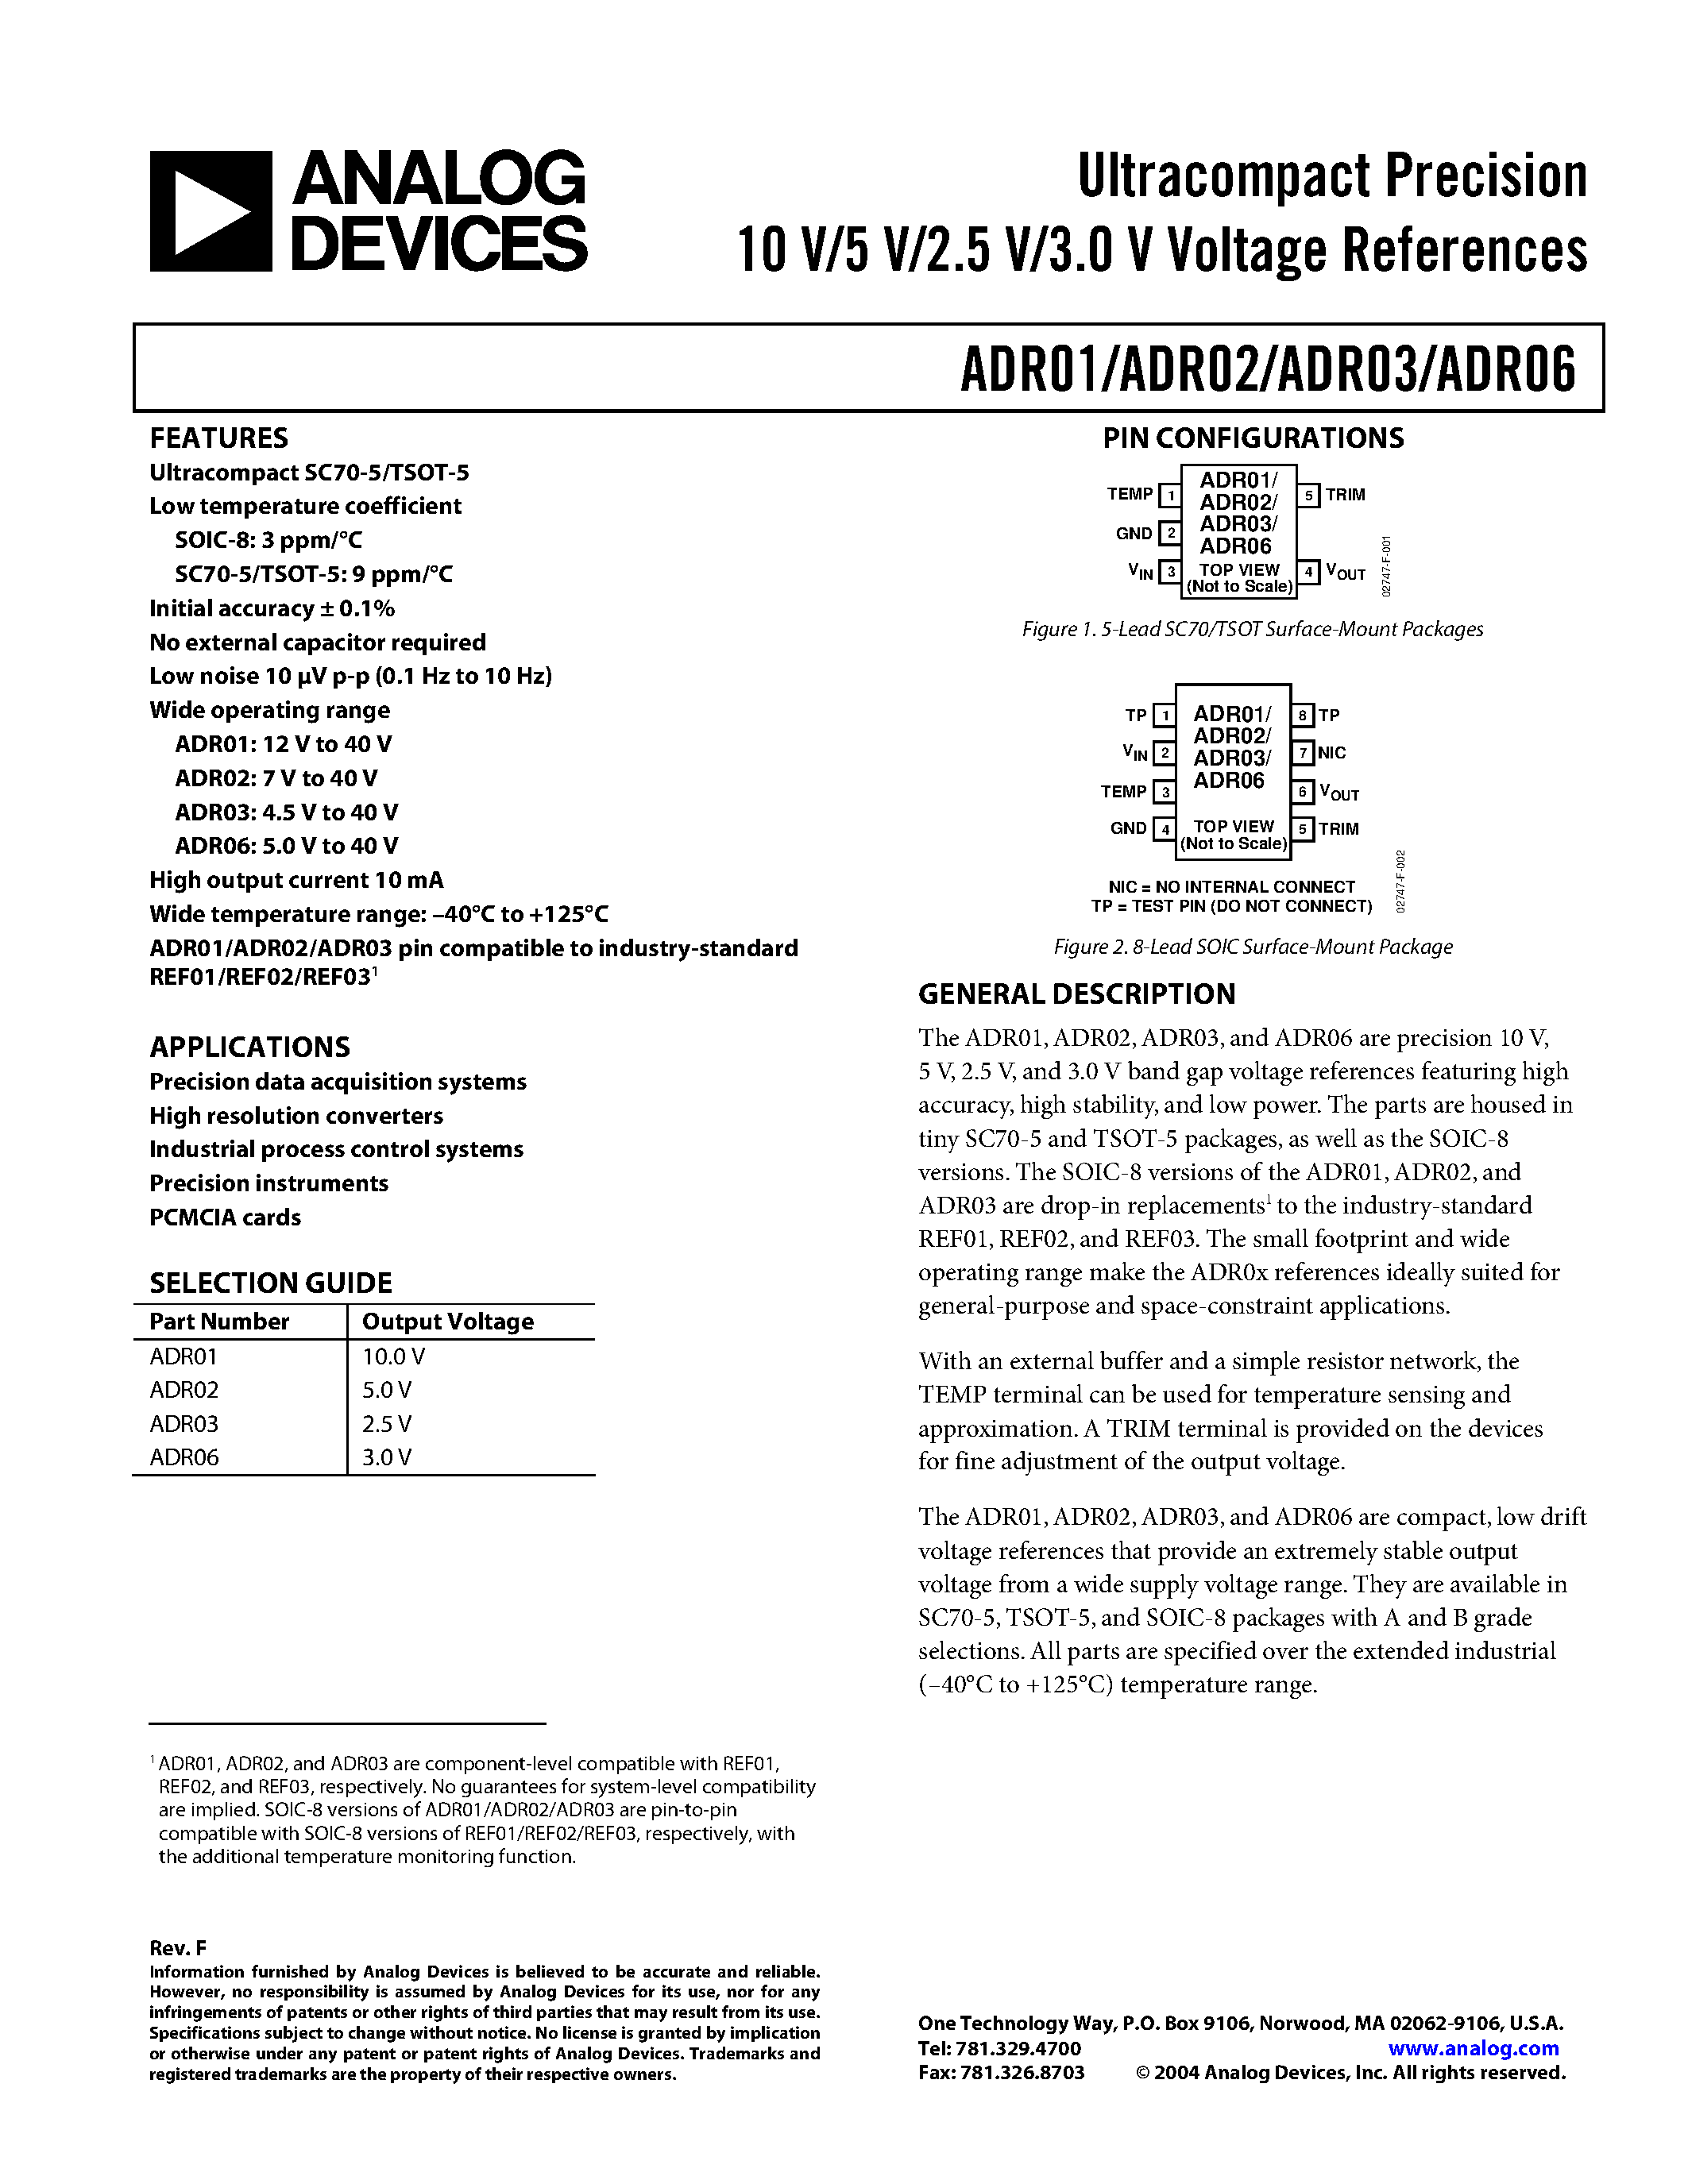 Даташит ADR01BR - Ultracompact Precision10 V/5 V/2.5 V/3.0 V Voltage References страница 1